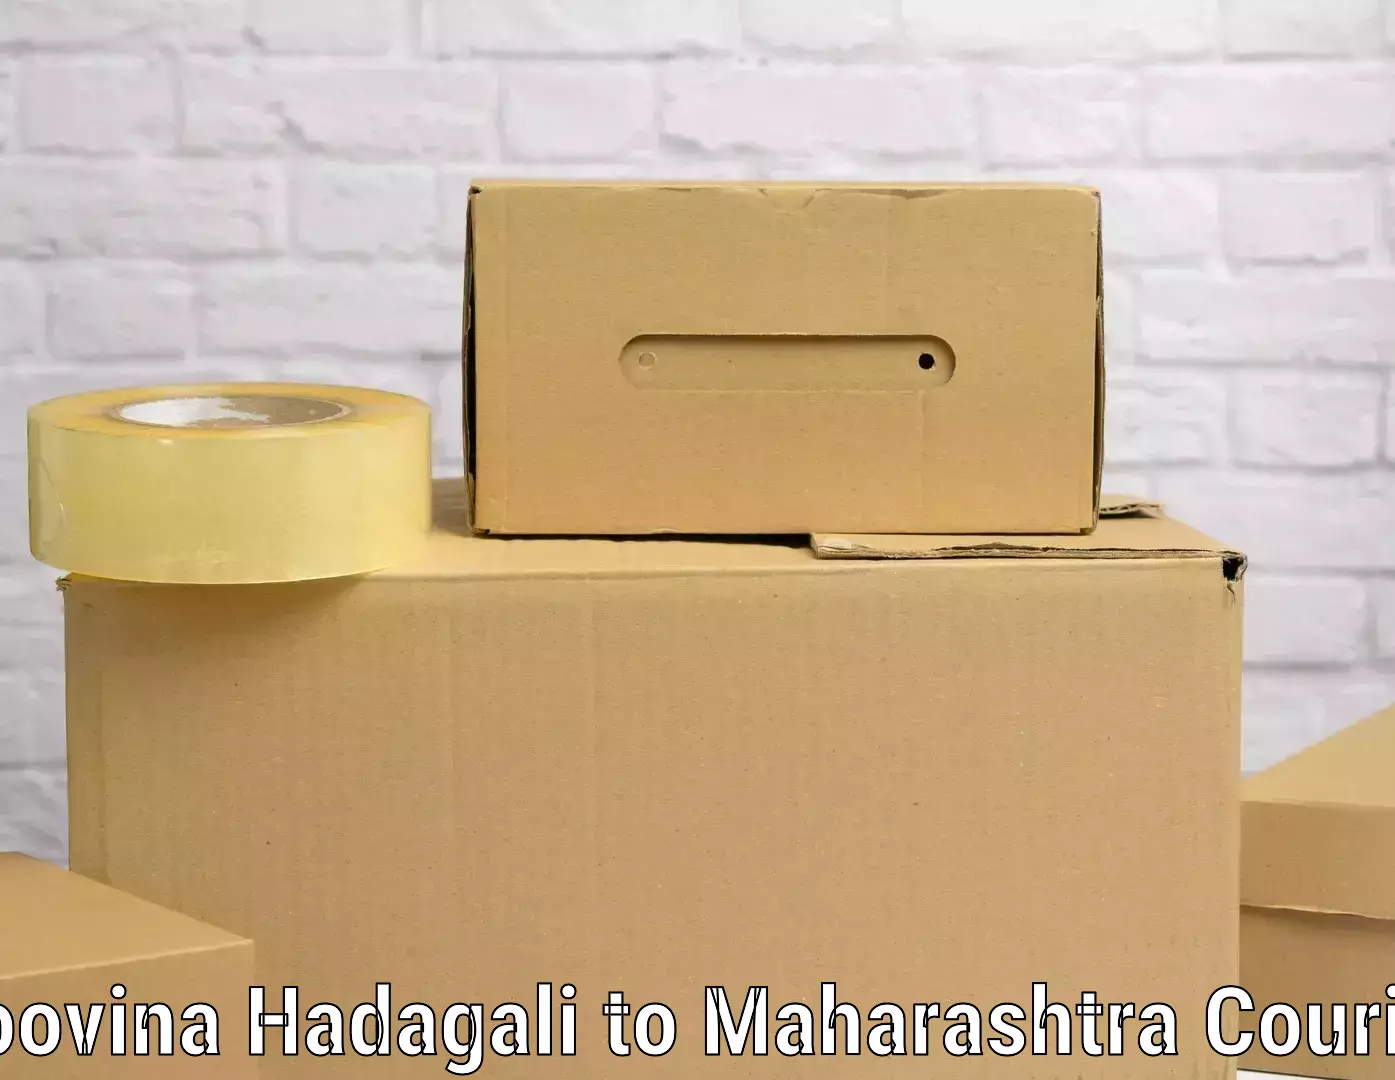 Luggage courier planning Hoovina Hadagali to Maharashtra